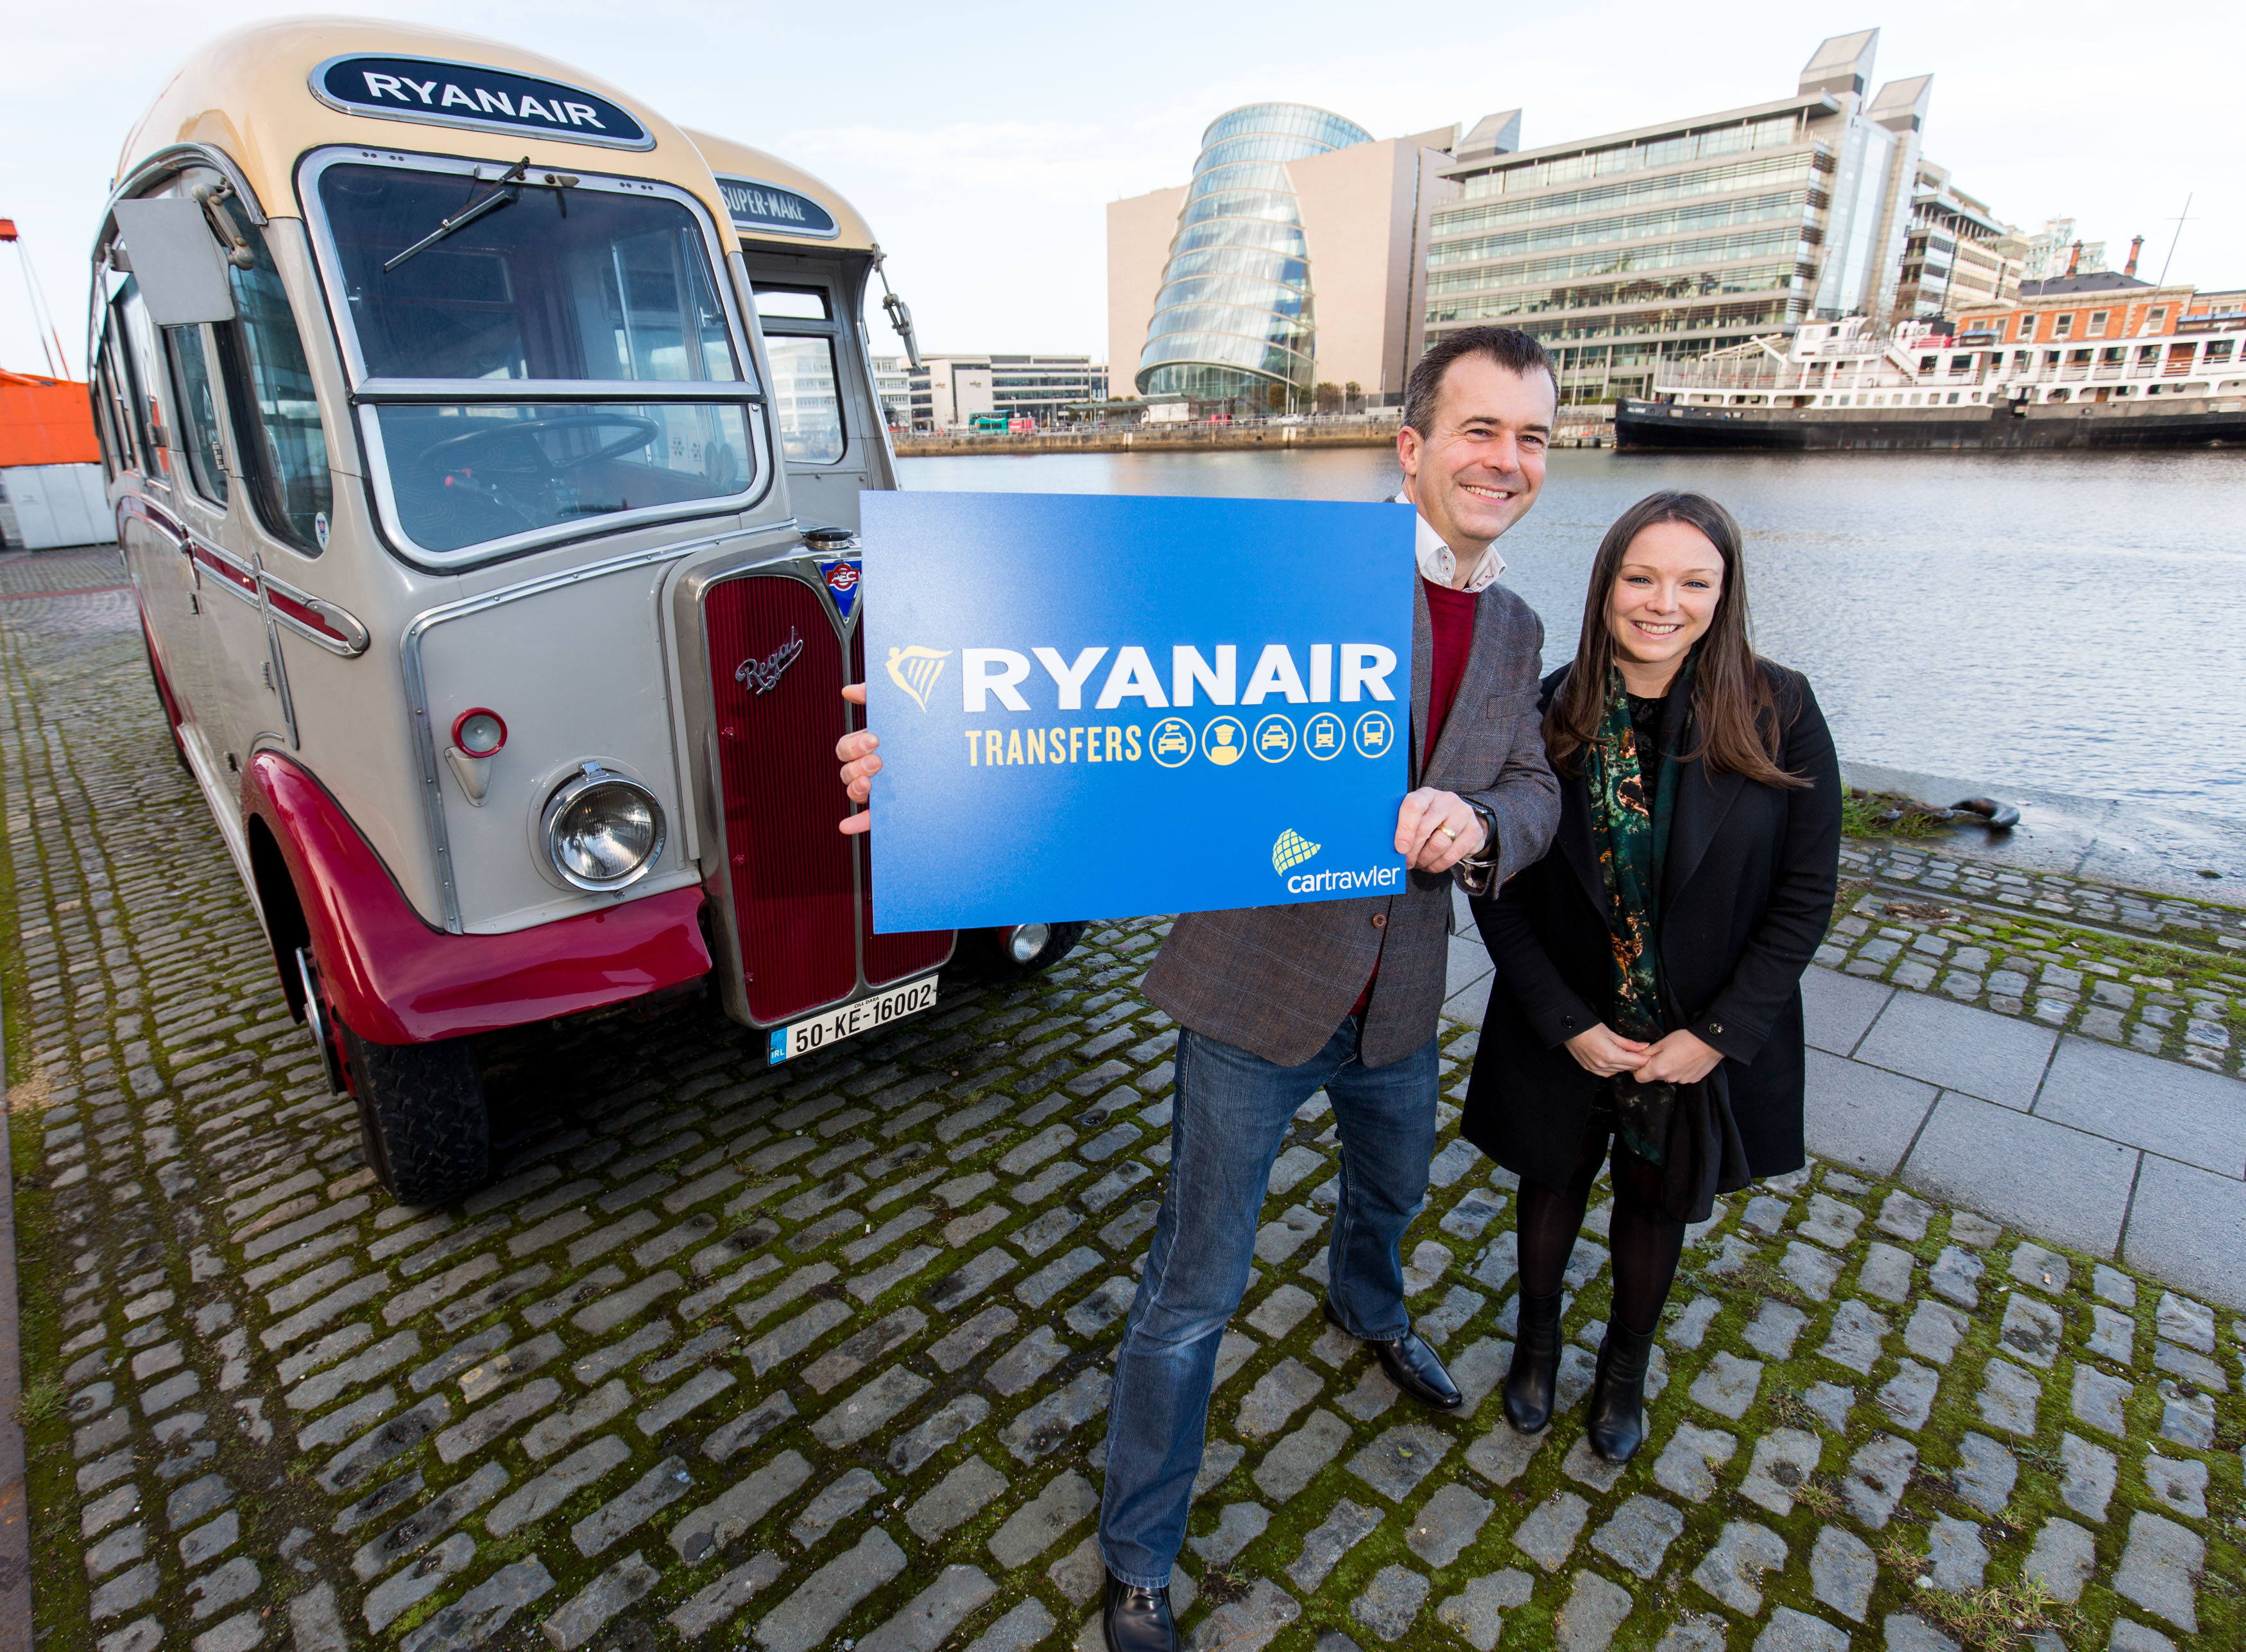 Η Ryanair Ανακοινωνει Νεα Υπηρεσια Μεταφορων Σε Συνεργασια Με Την Cartrawler